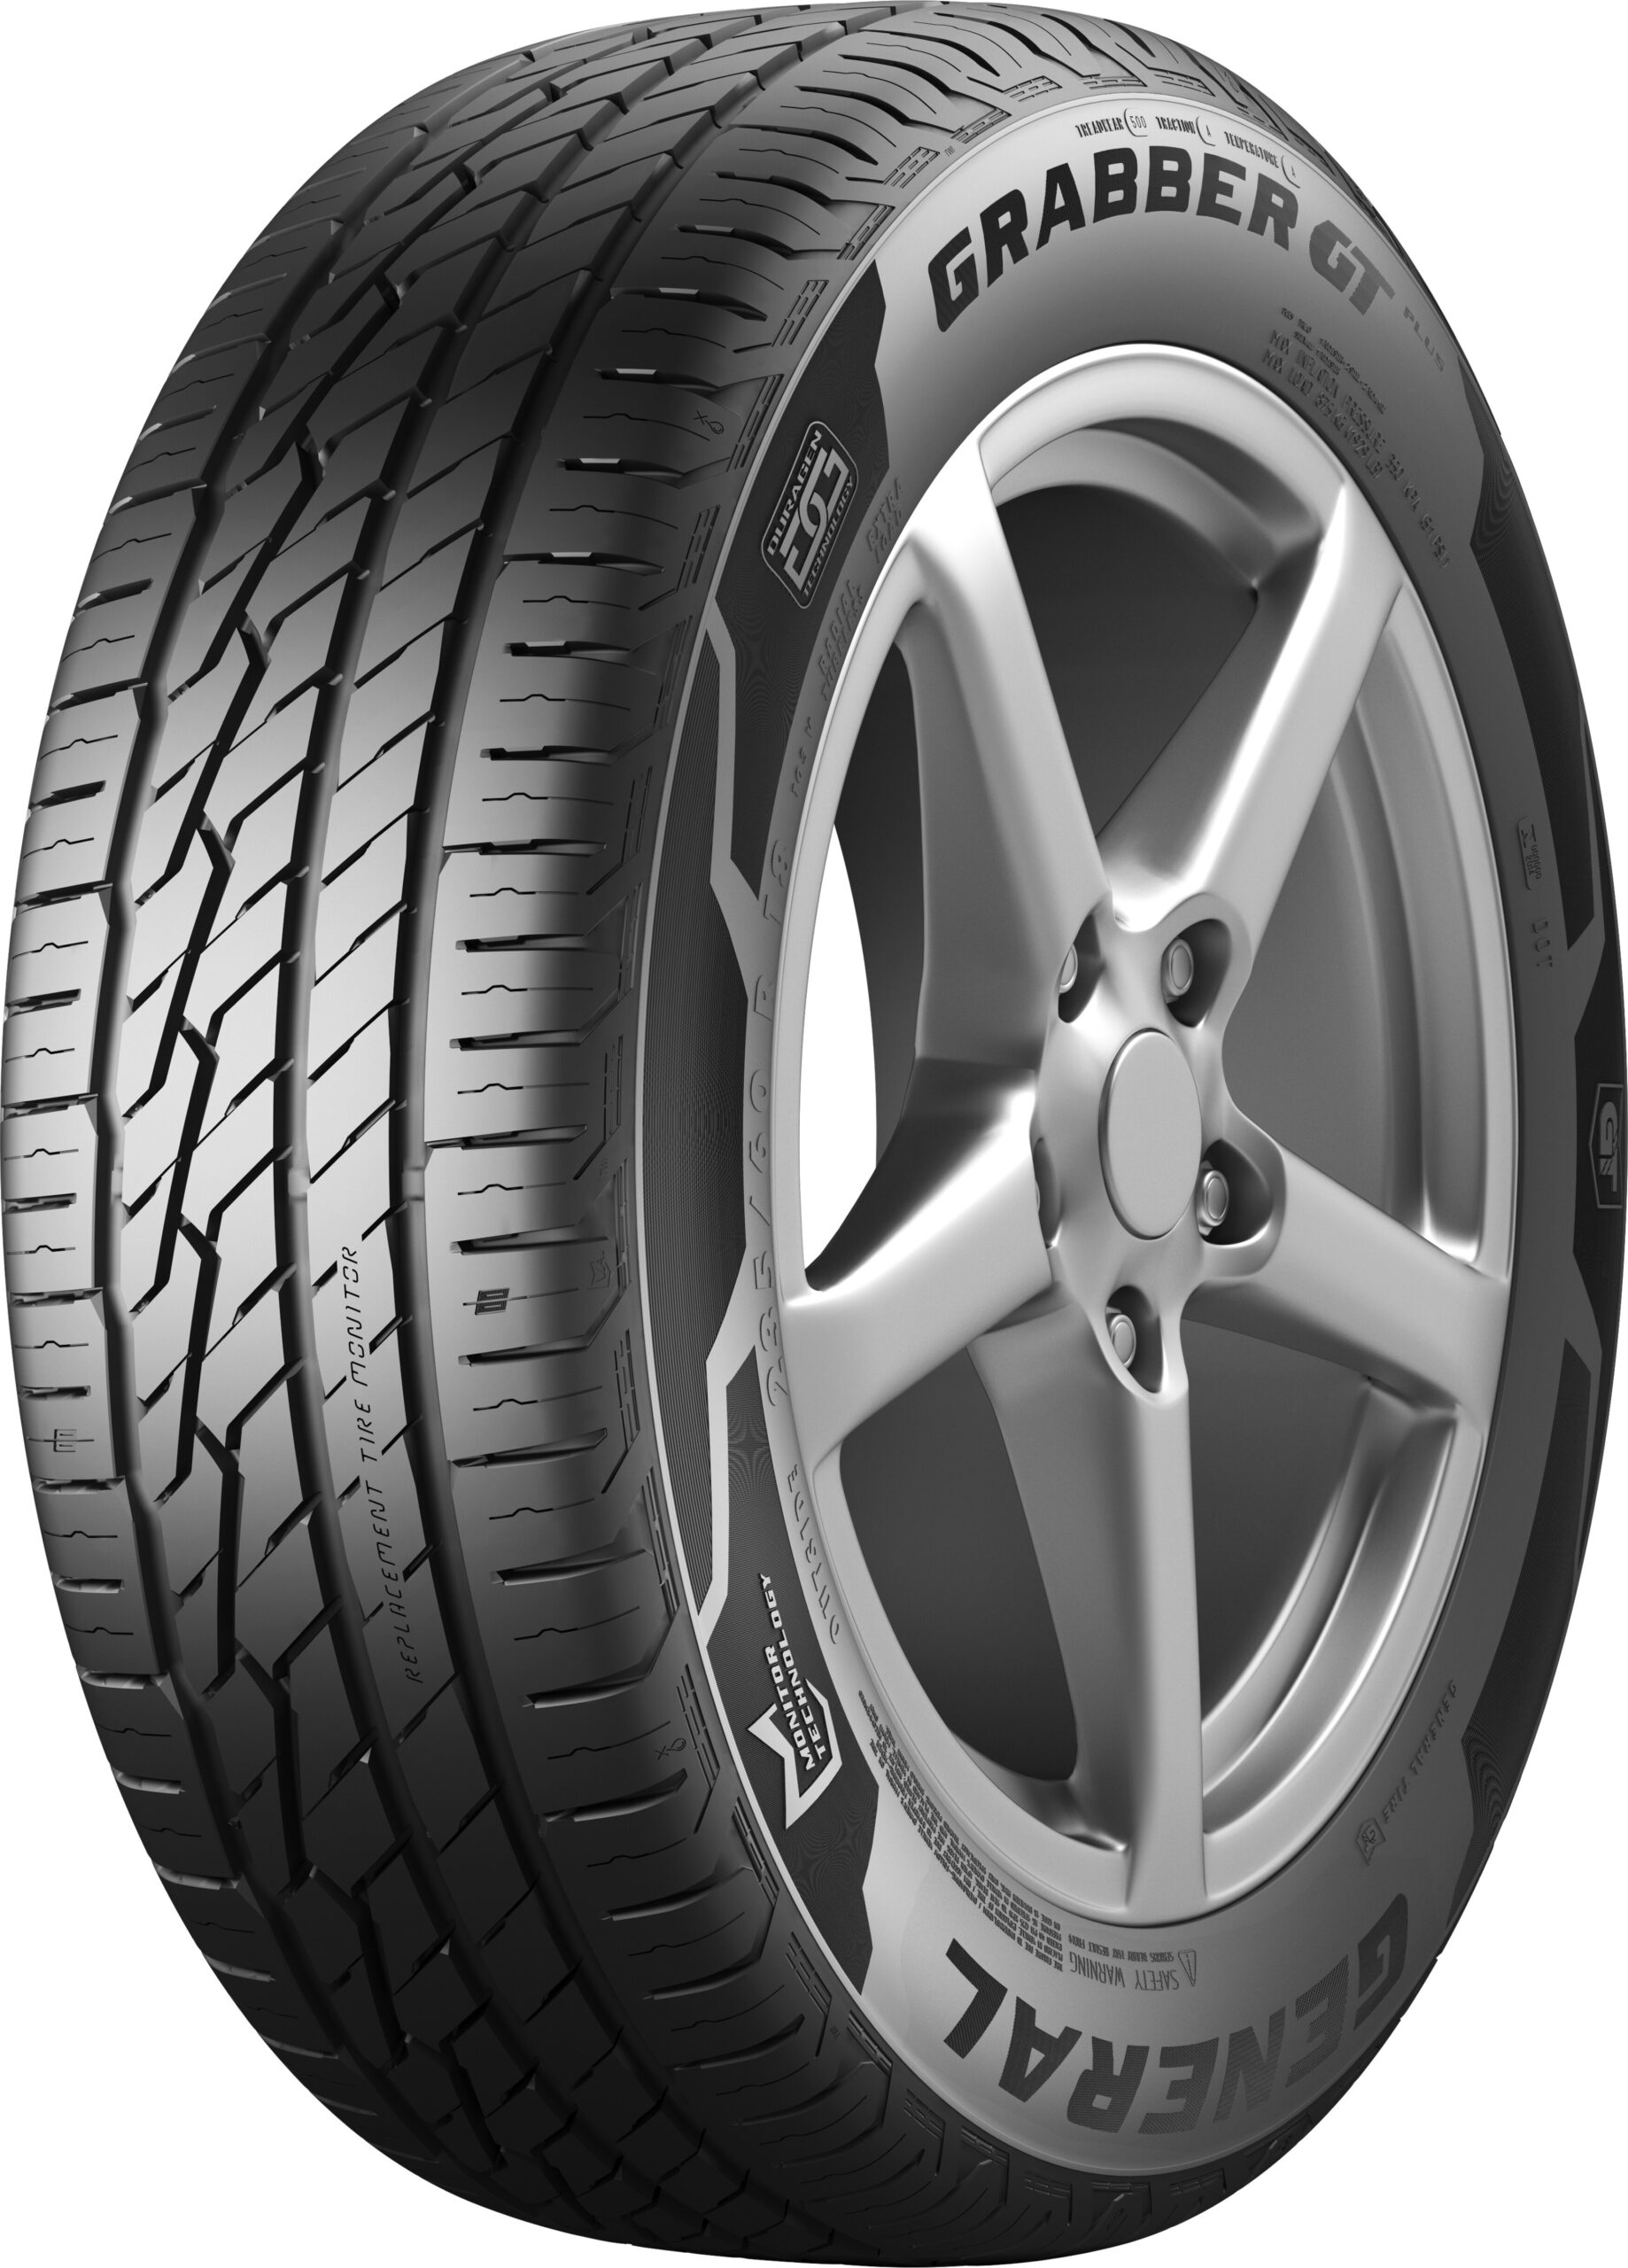 Com Grabber GT Plus, General Tire entra no segmento de pneus para SUVs e crossovers